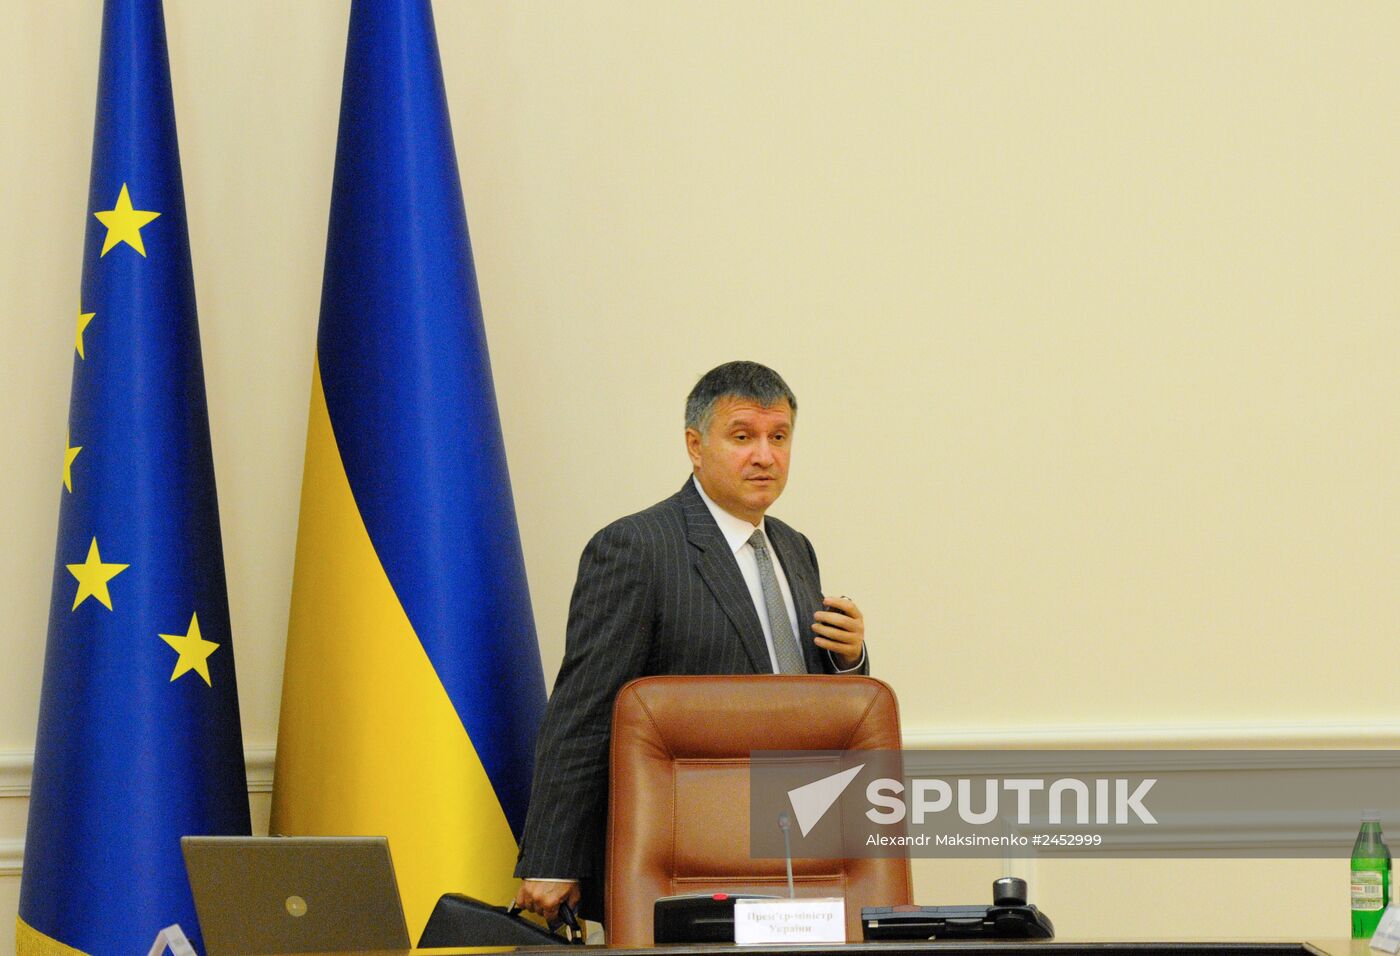 Ukrainian Prime Minister Arseny Yatsenyuk chairs government meeting